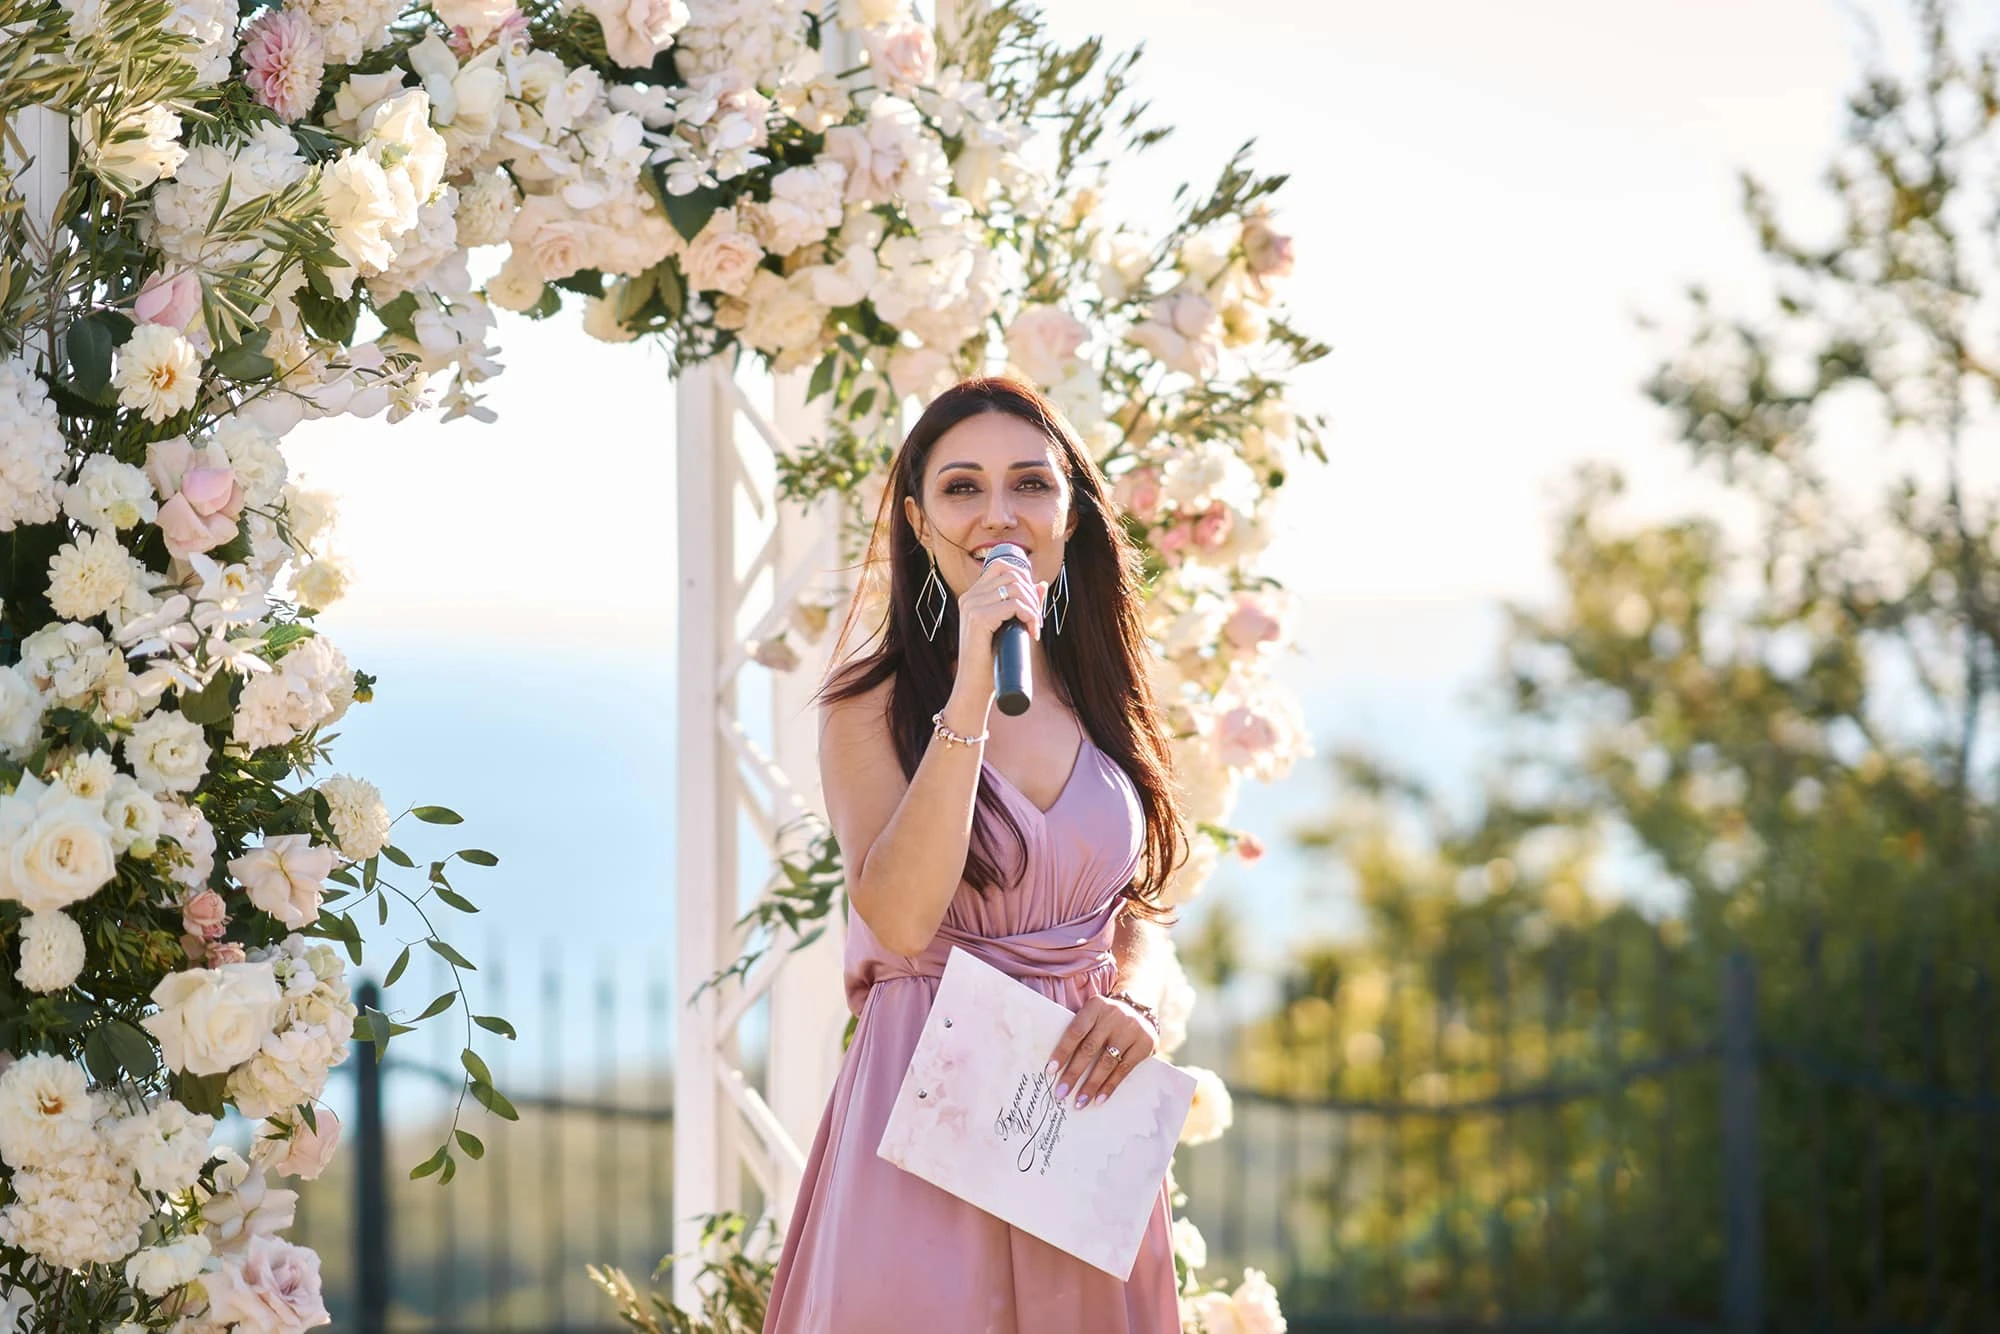 Master of Ceremony and wedding host Bilyana Tsaneva